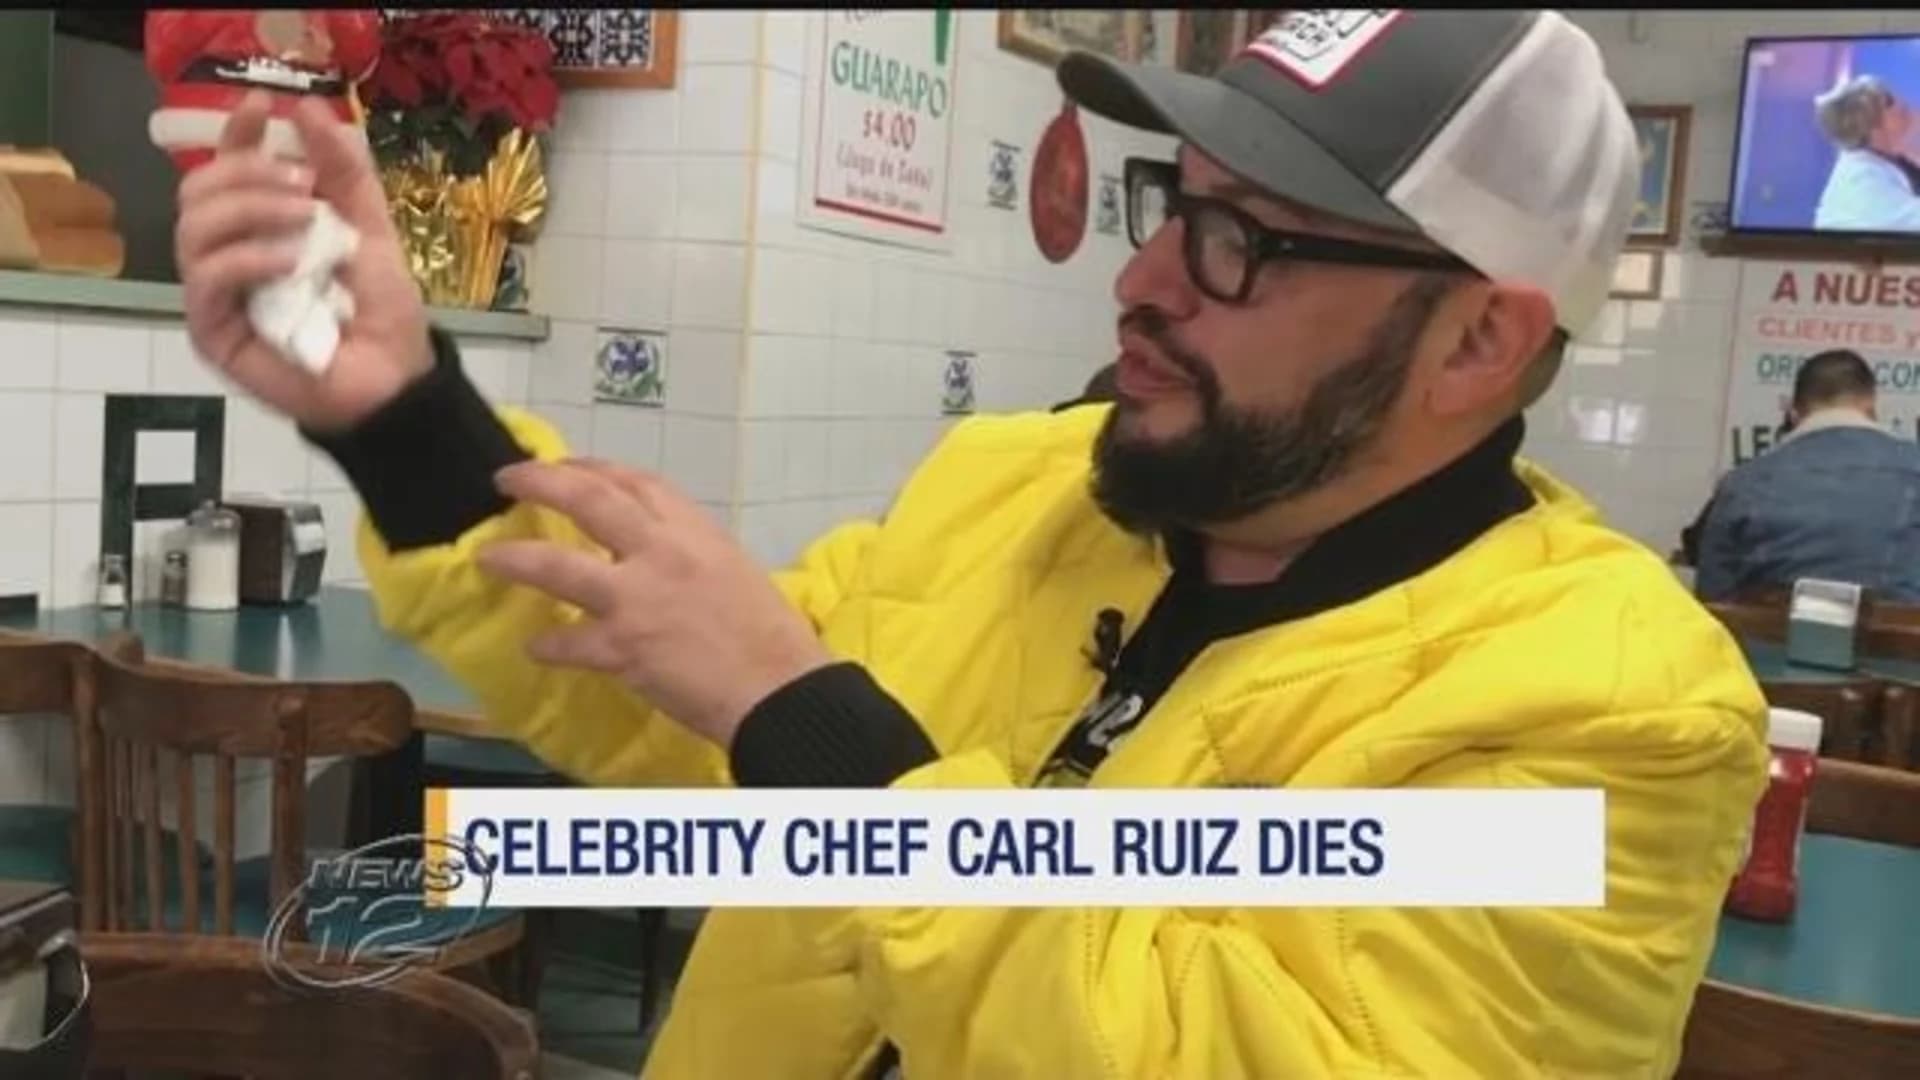 Television celebrity chef, restaurateur Carl Ruiz dies at 44